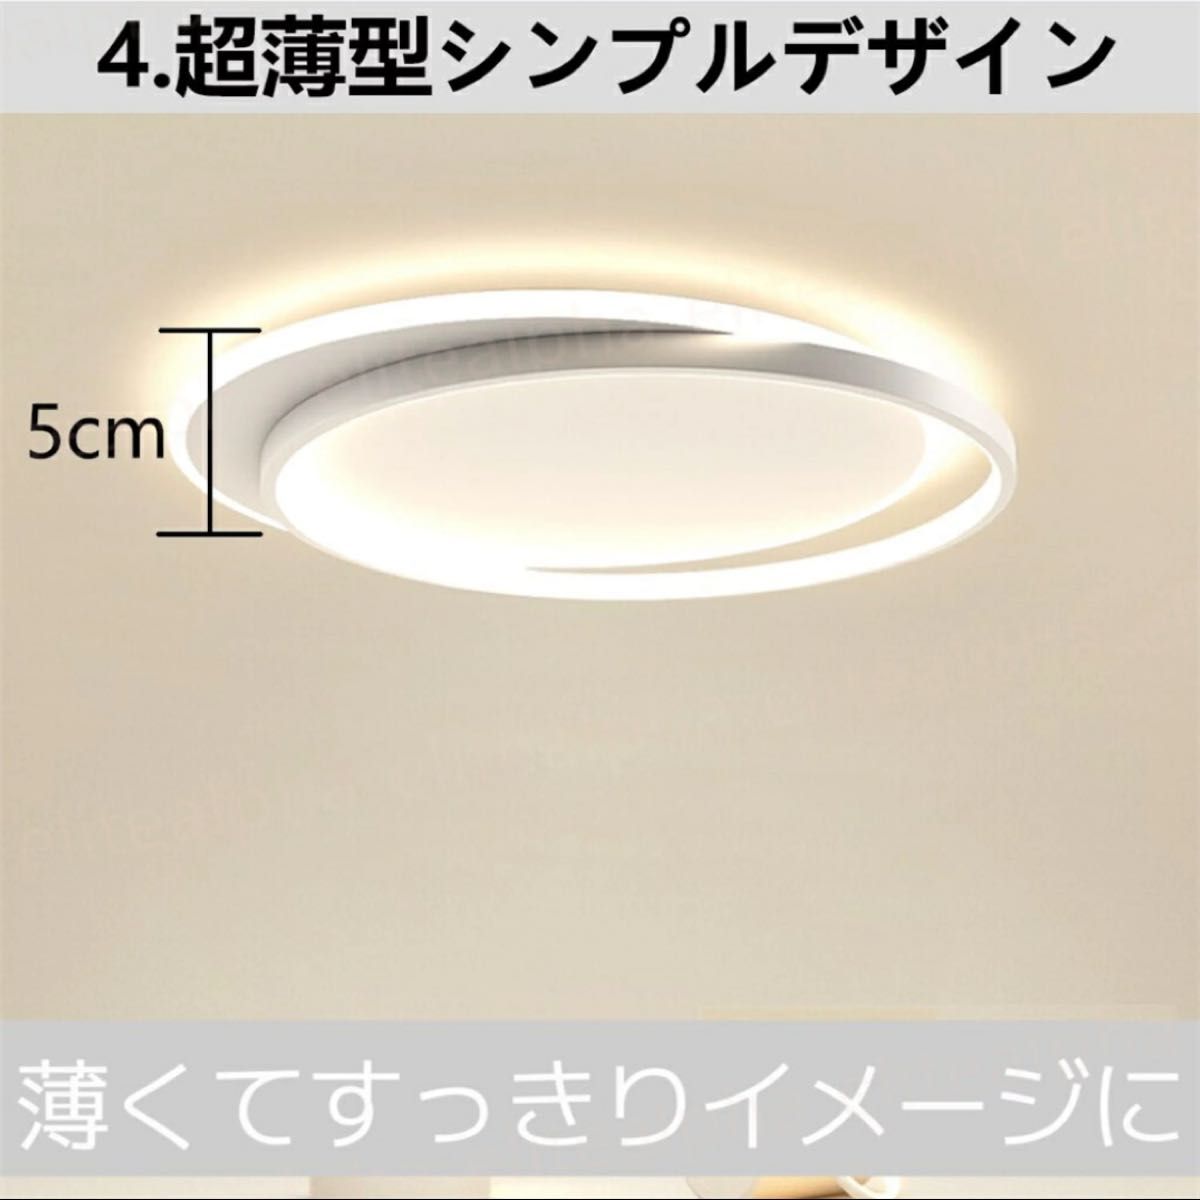 シーリングライト LED 北欧 調光調色 リモコン付き 薄型 6畳 8畳 寝室 天井照明 おしゃれ 明るい 40~60cm